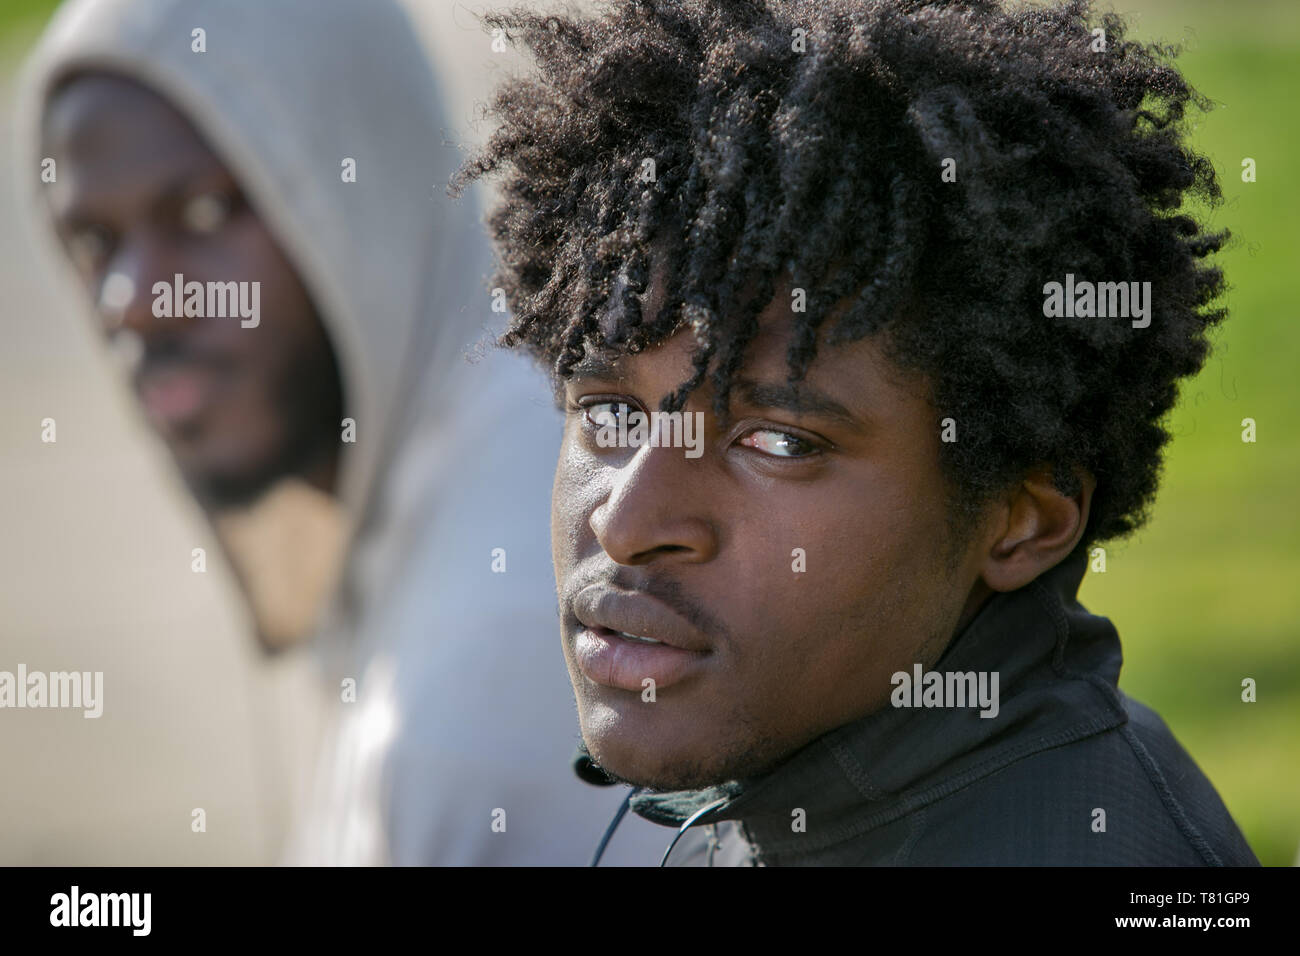 street portrait taken in Philadelphia Pennsylvania of 2 African American friends in a park Stock Photo